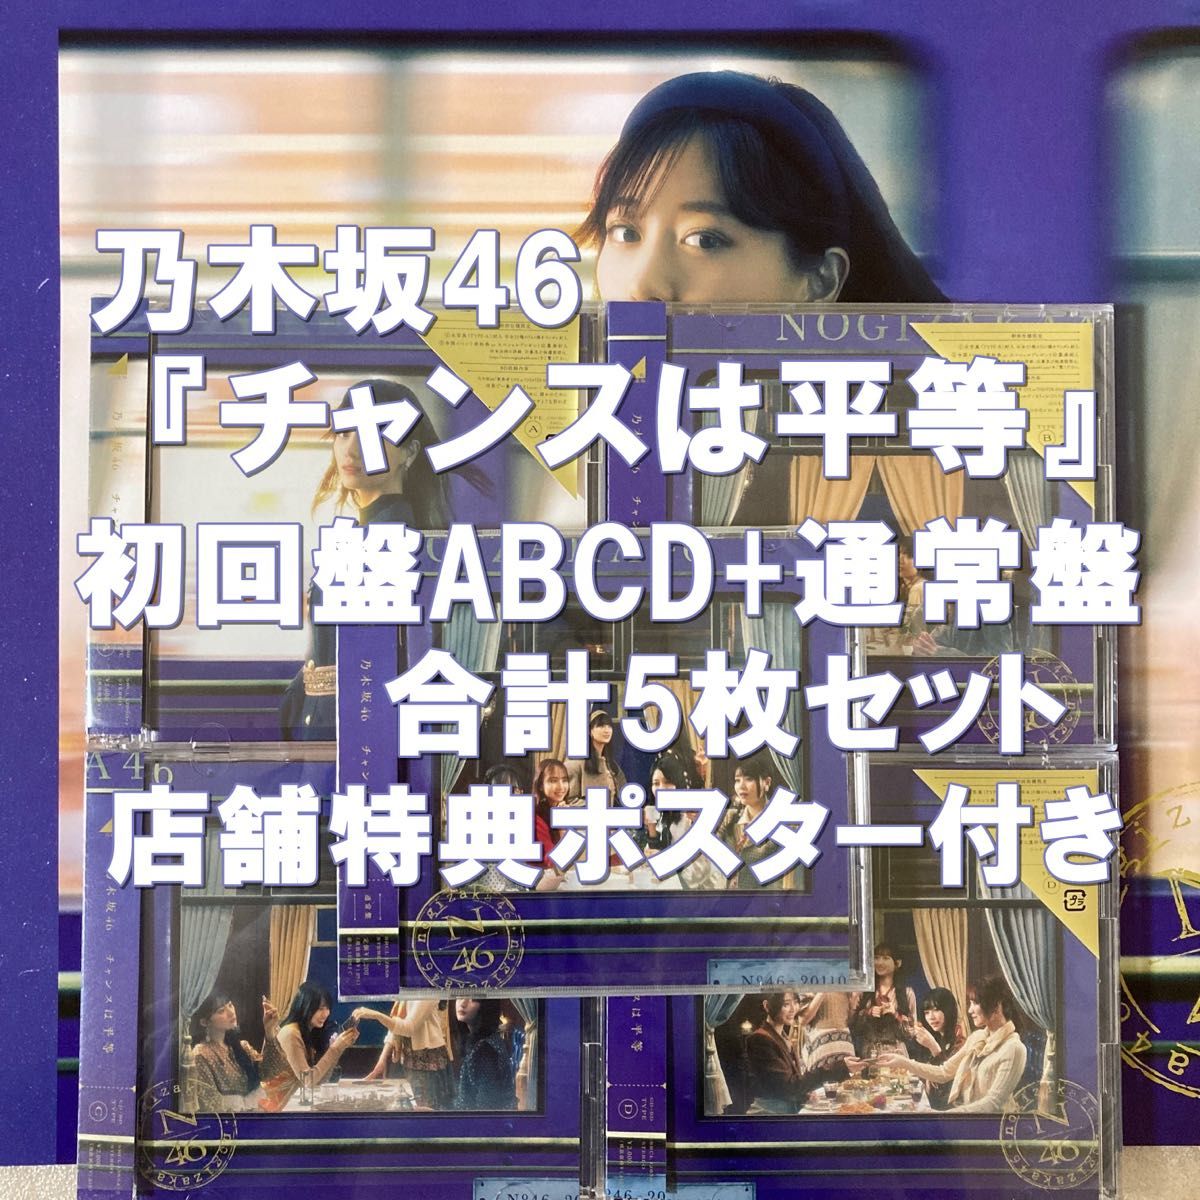 乃木坂46 チャンスは平等 初回限定盤ABCD+通常盤 計5枚 CD+Blu-ray 特典ポスター付き 山下美月